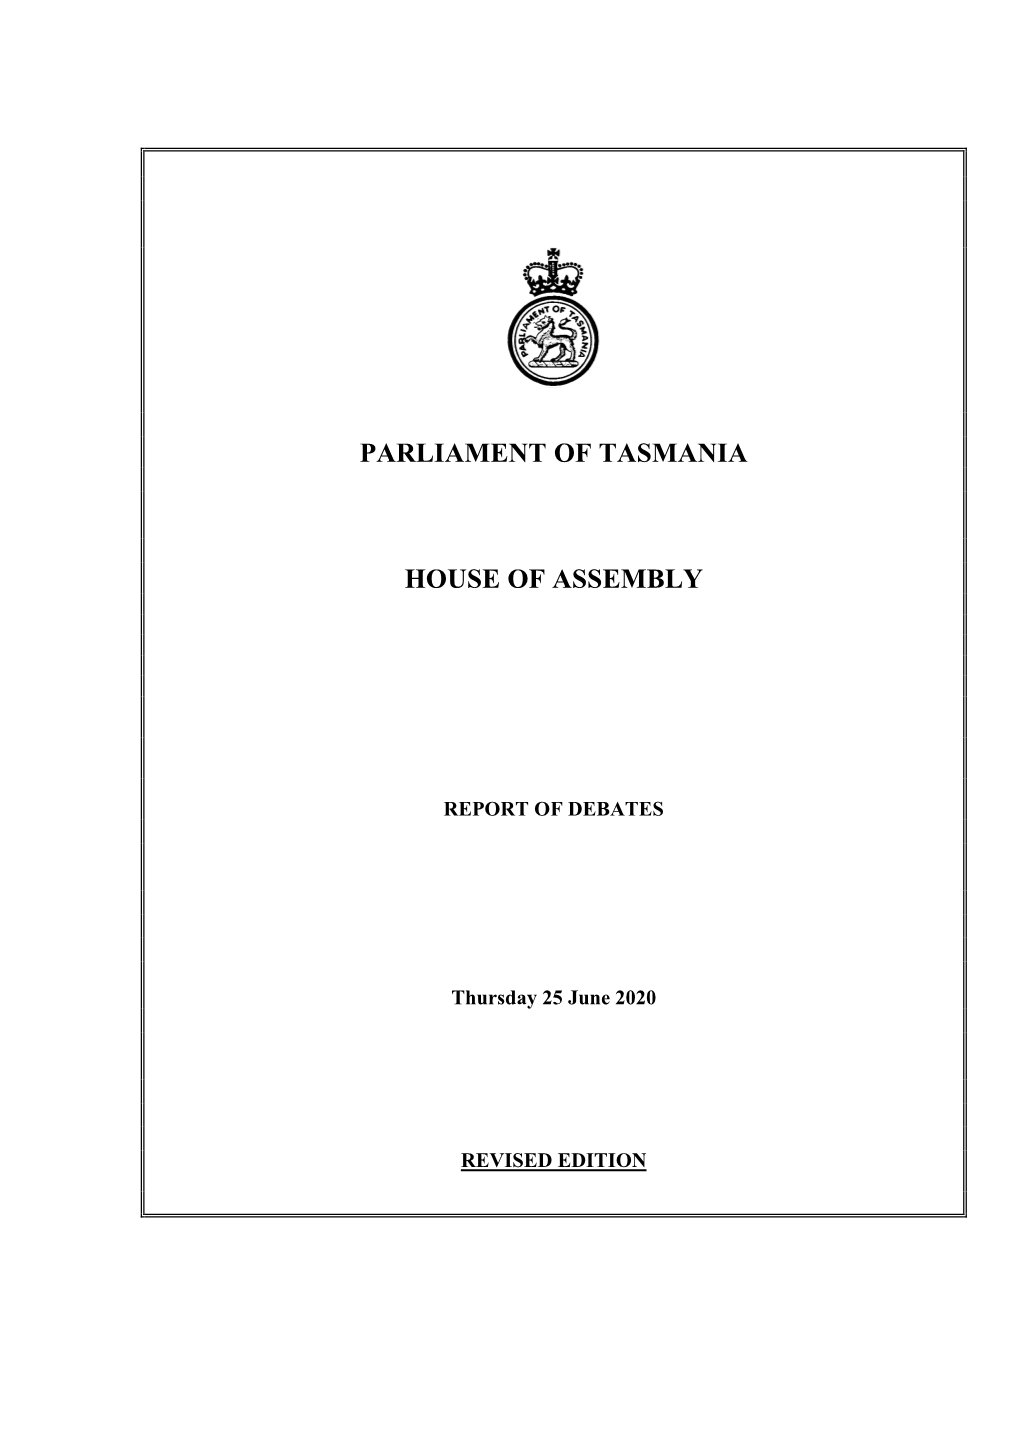 House of Assembly Thursday 25 June 2020